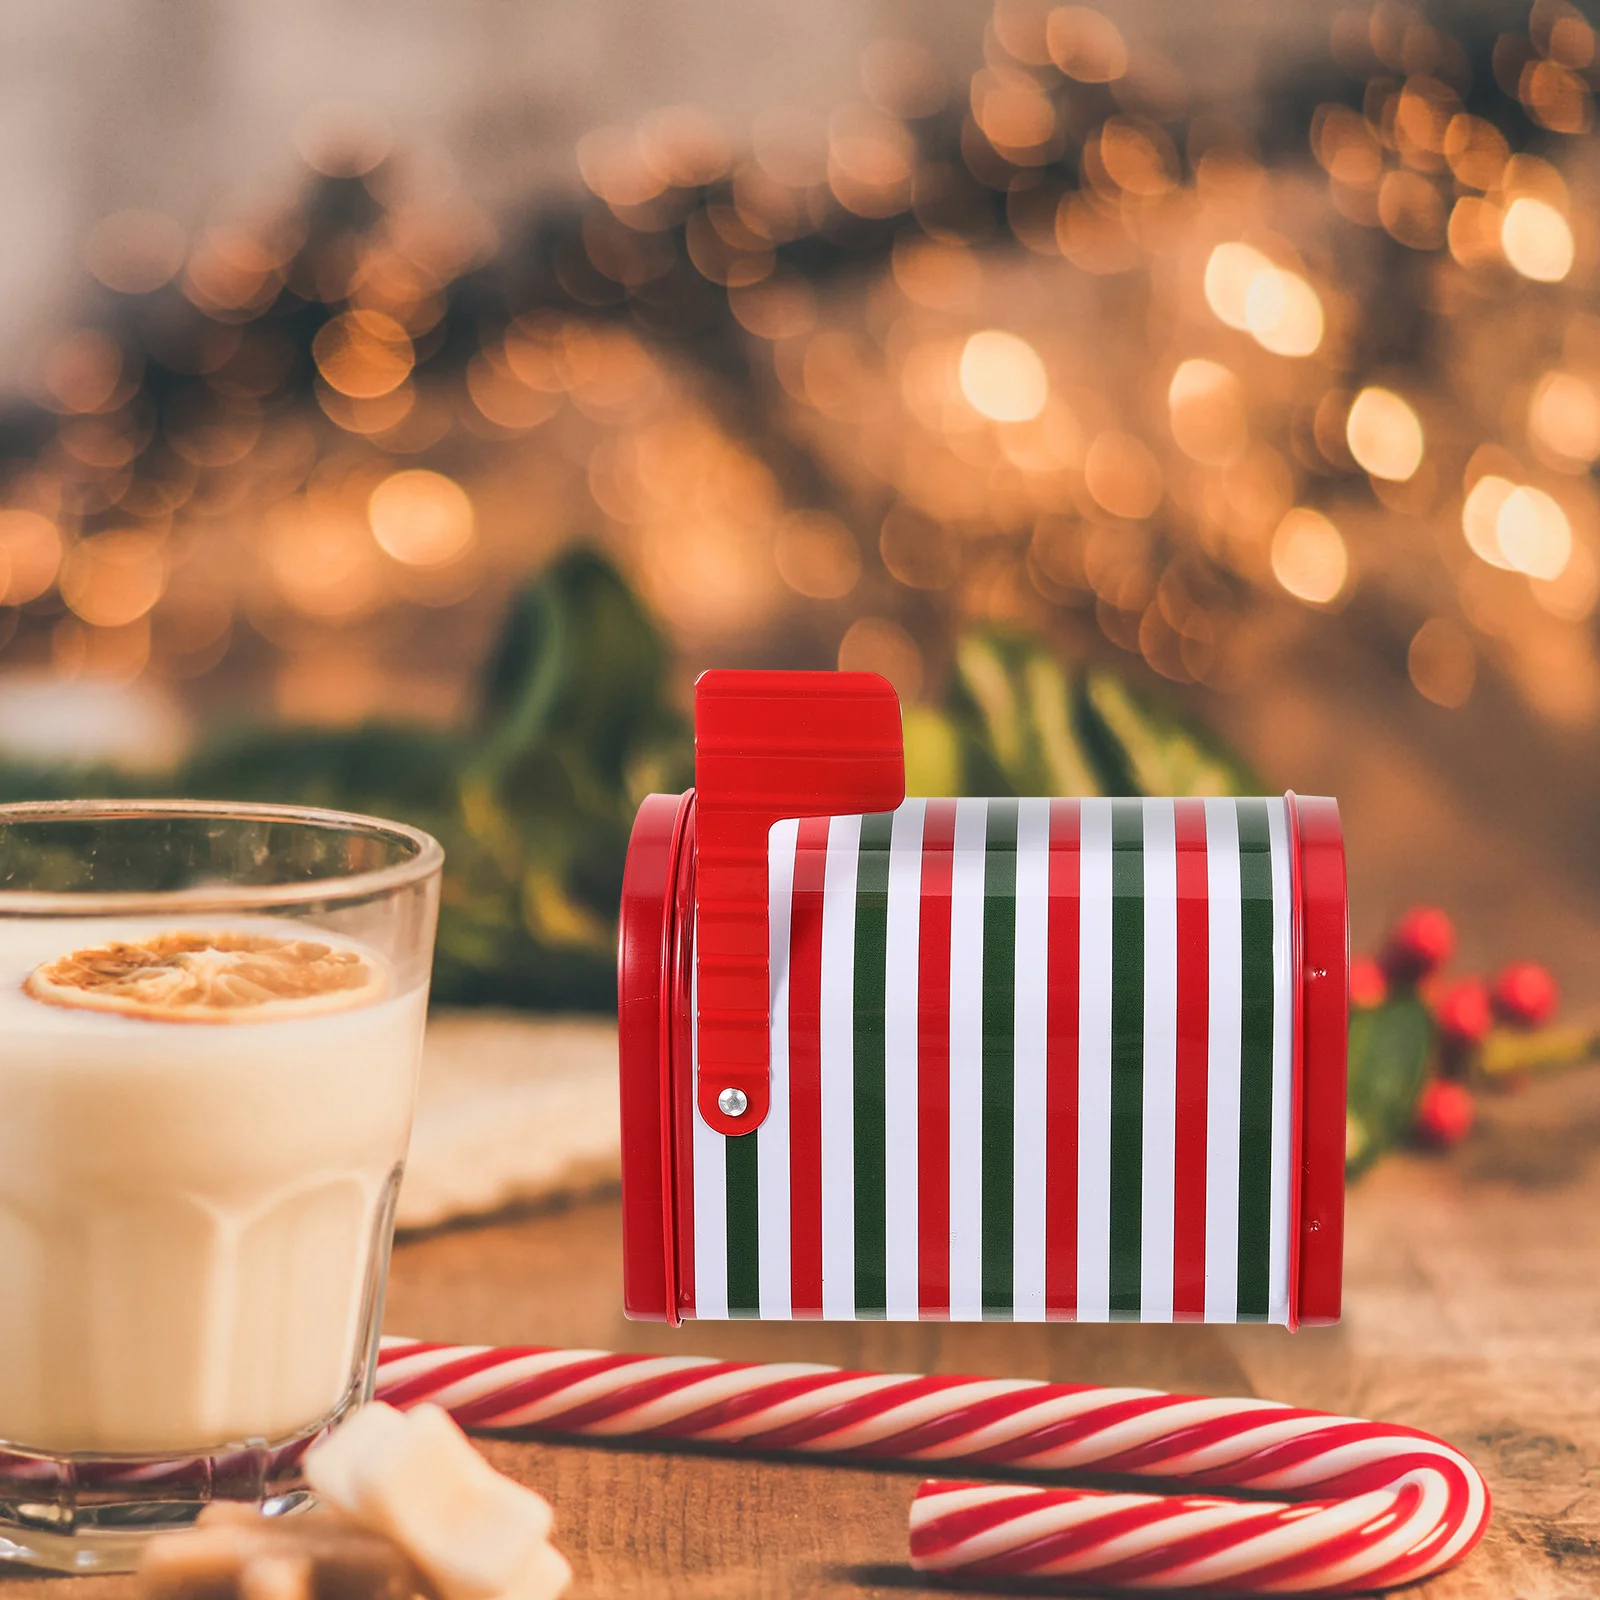 Рождественские формочки для печенья с крышками, пустые коробки для обмена конфетами, кондитерскими угощениями, Отмечайте праздник, подарки для вечеринки, почтовый ящик